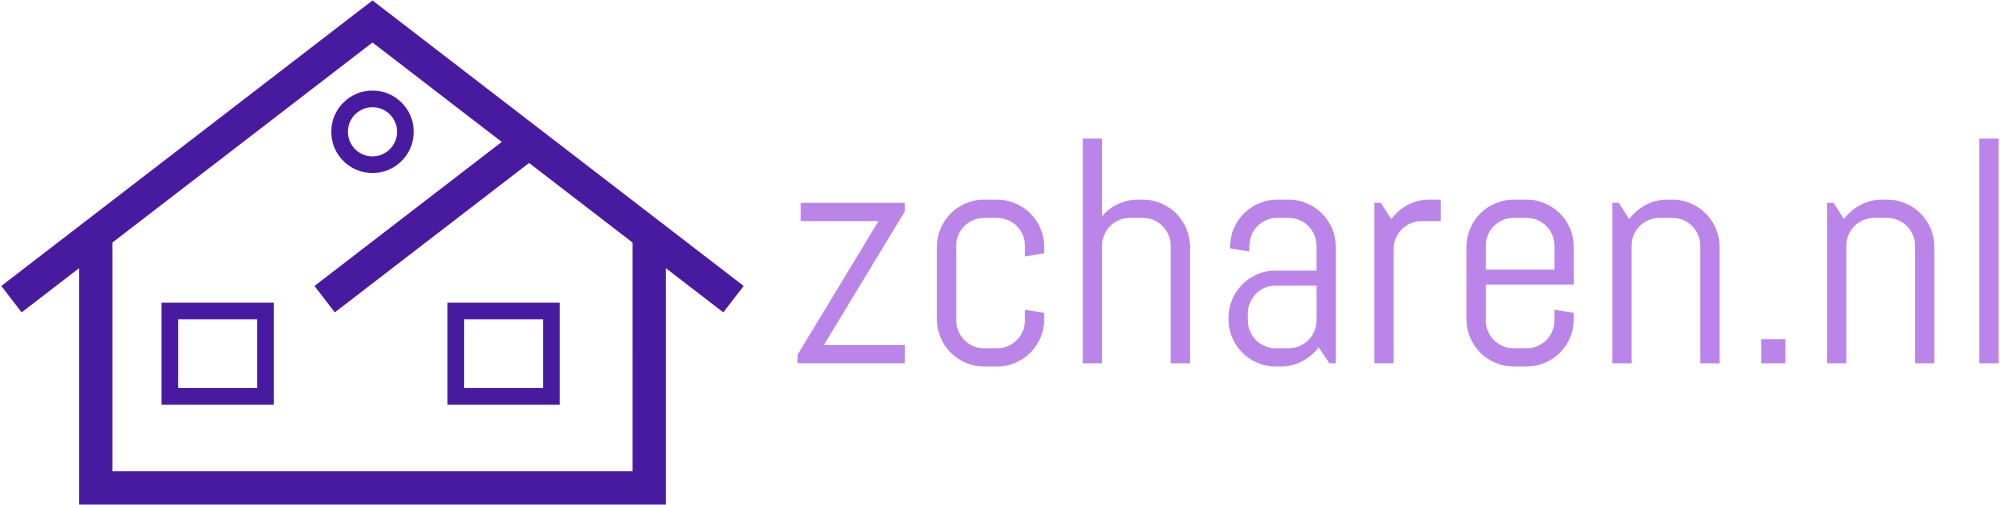 zcharennl-high-resolution-logo-transparent